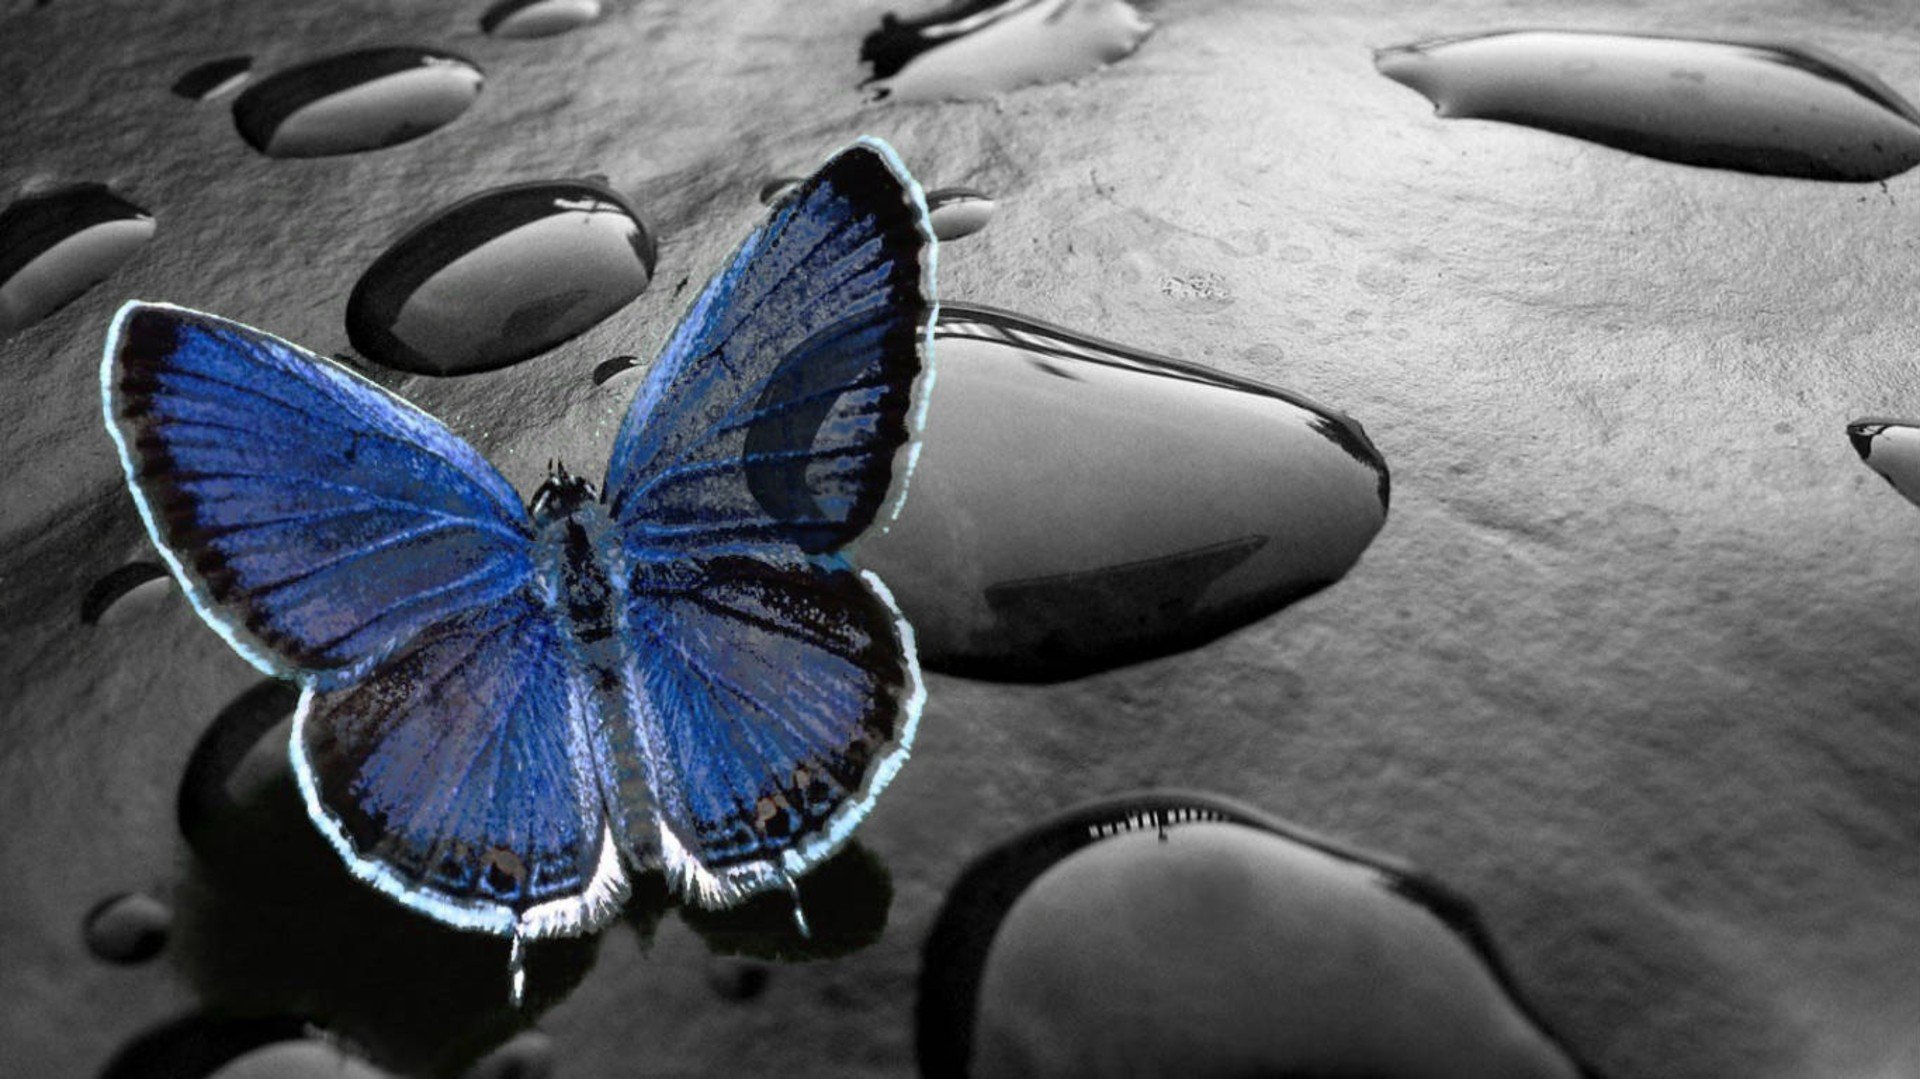 Обои красивые на телефон весь экран необычные. Картинки на рабочий стол бабочки. Заставка на телефон бабочки. Синяя бабочка. Необычные обои.